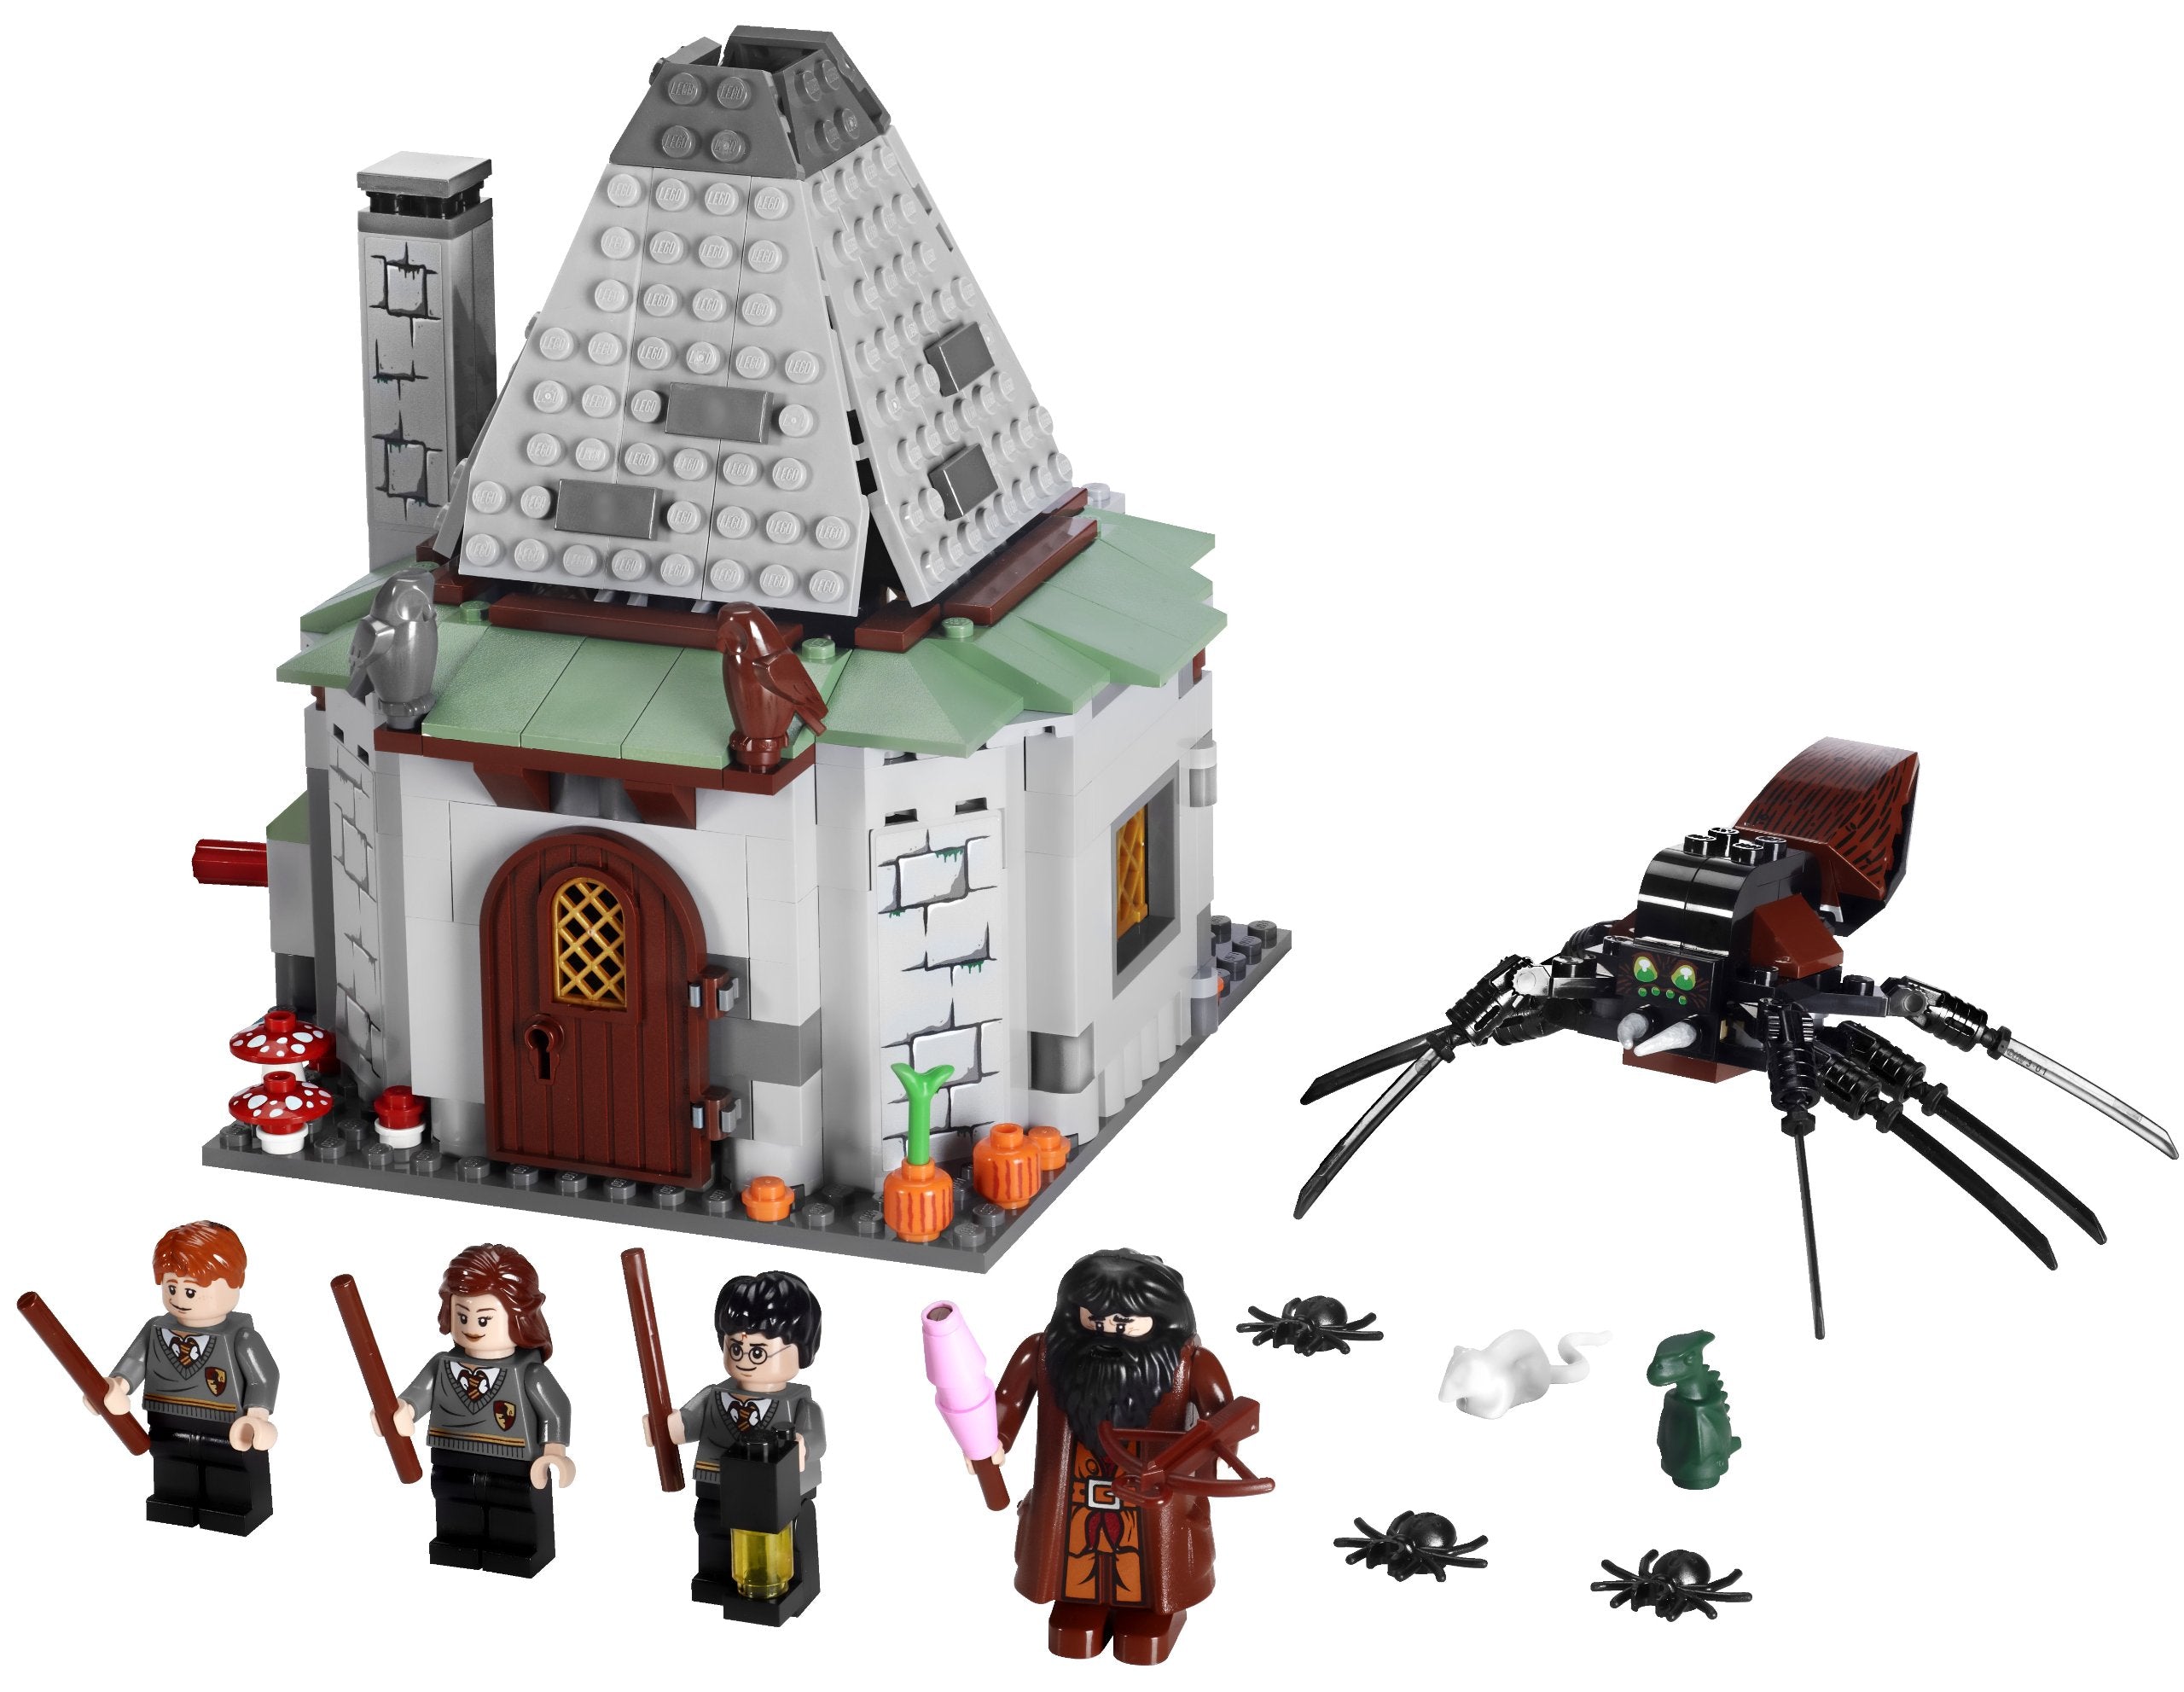 LEGO 4738 Harry Potter Hagrid's Hut (Damaged Box)